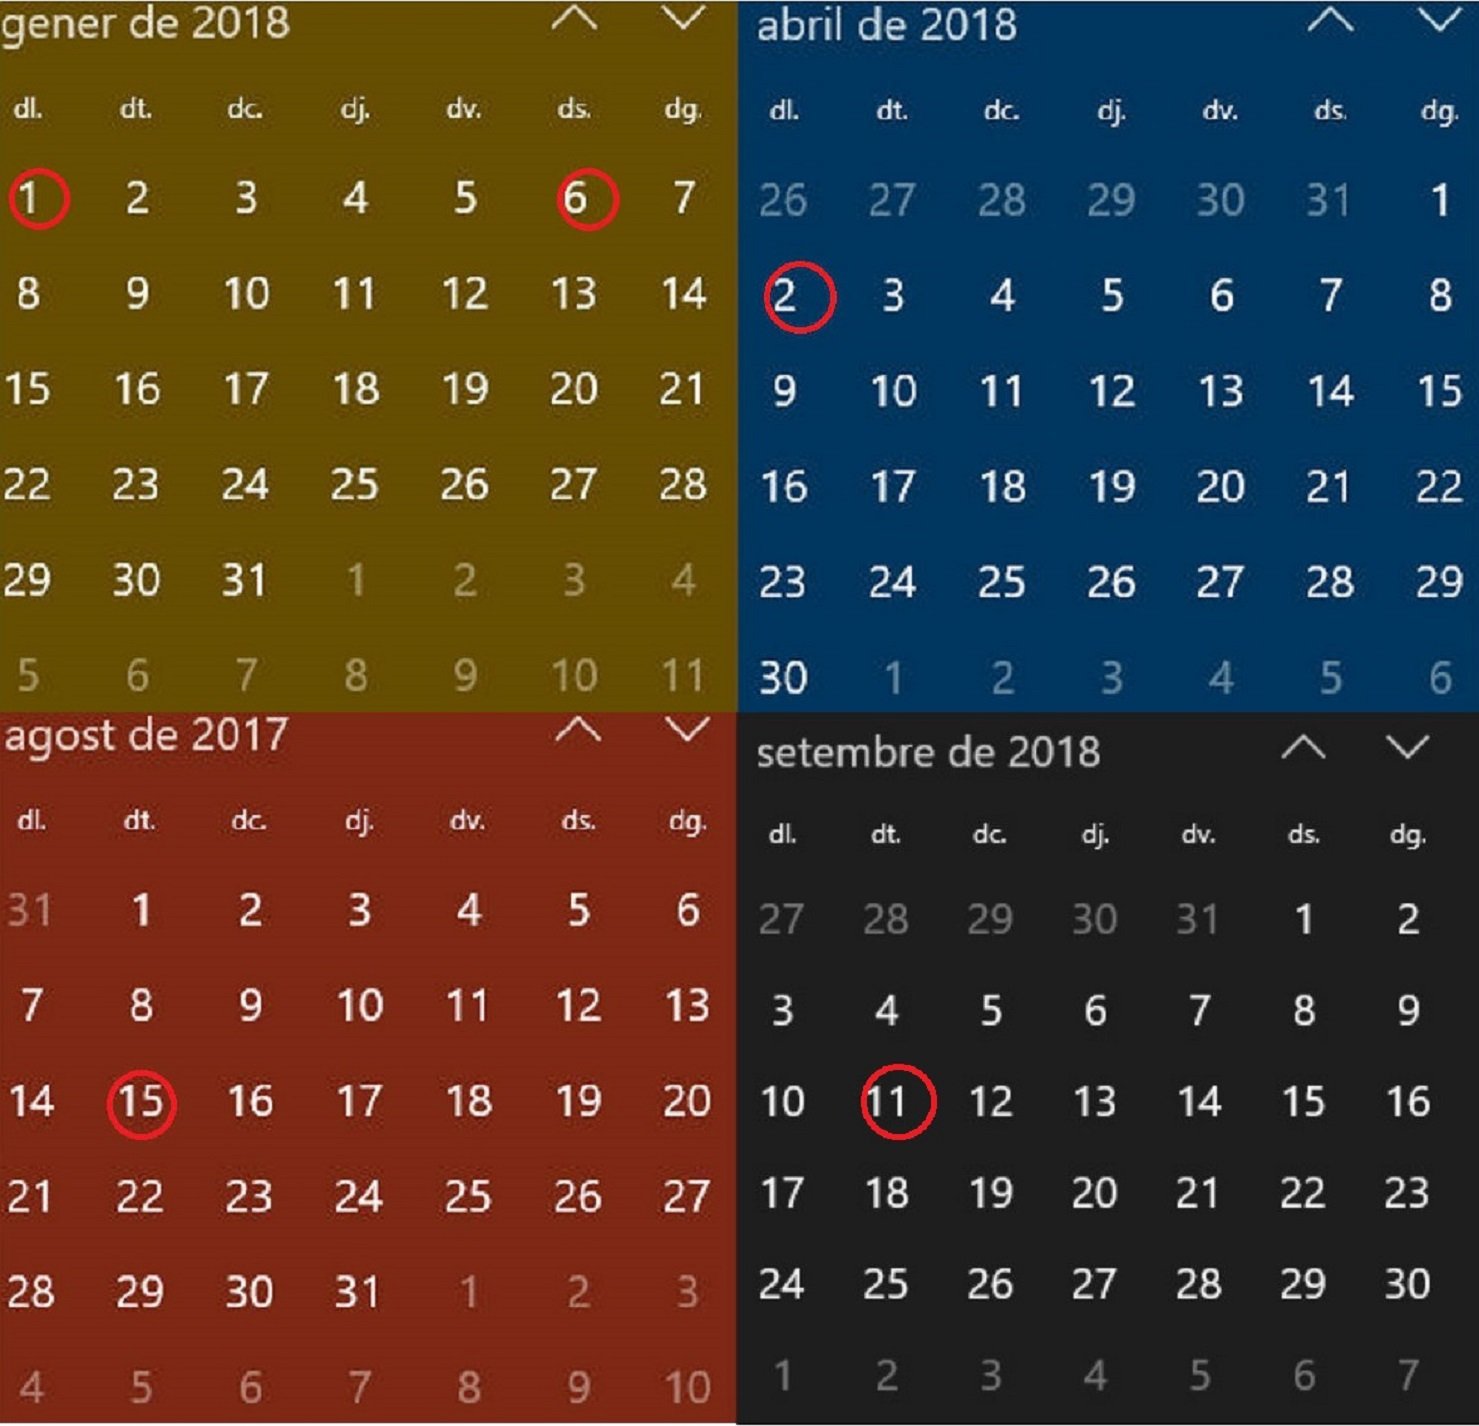 Este es el calendario de fiestas laborales en Catalunya para el 2018